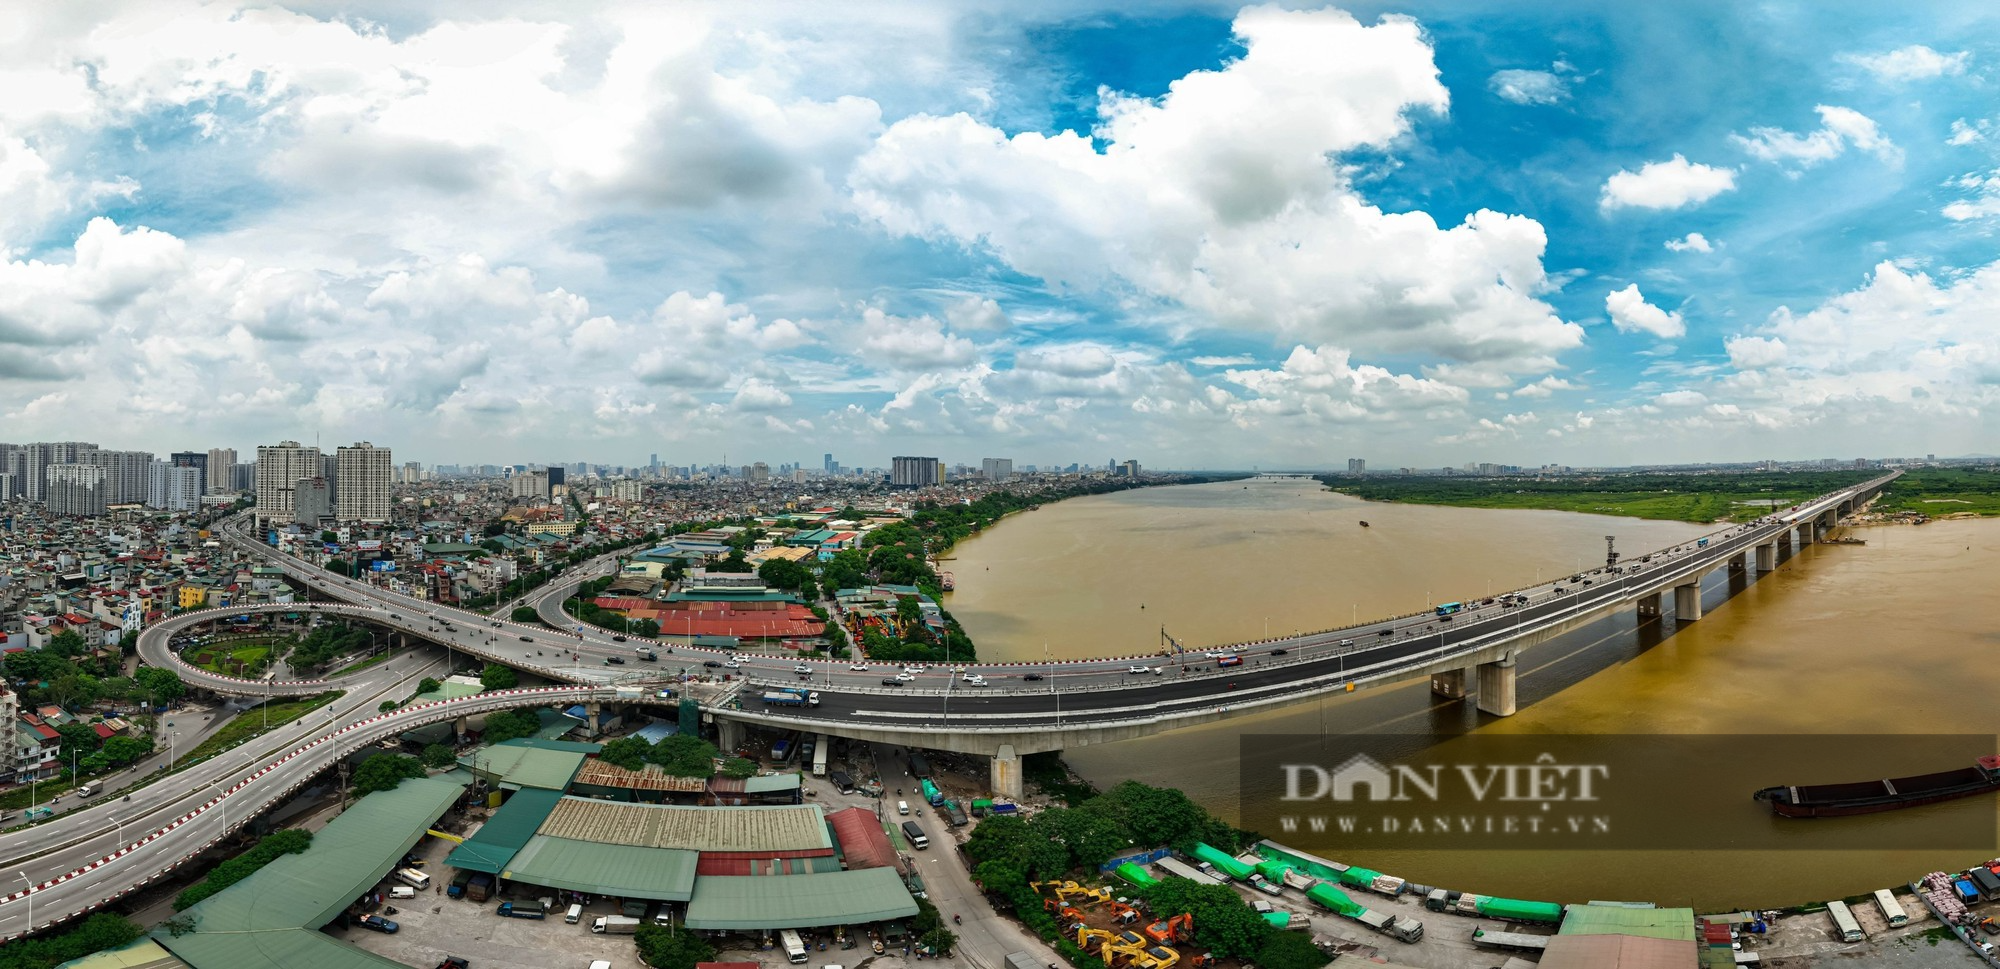 Hà Nội: Khánh thành cầu Vĩnh Tuy 2 vượt sông Hồng trị giá 2.500 tỷ đồng - Ảnh 2.